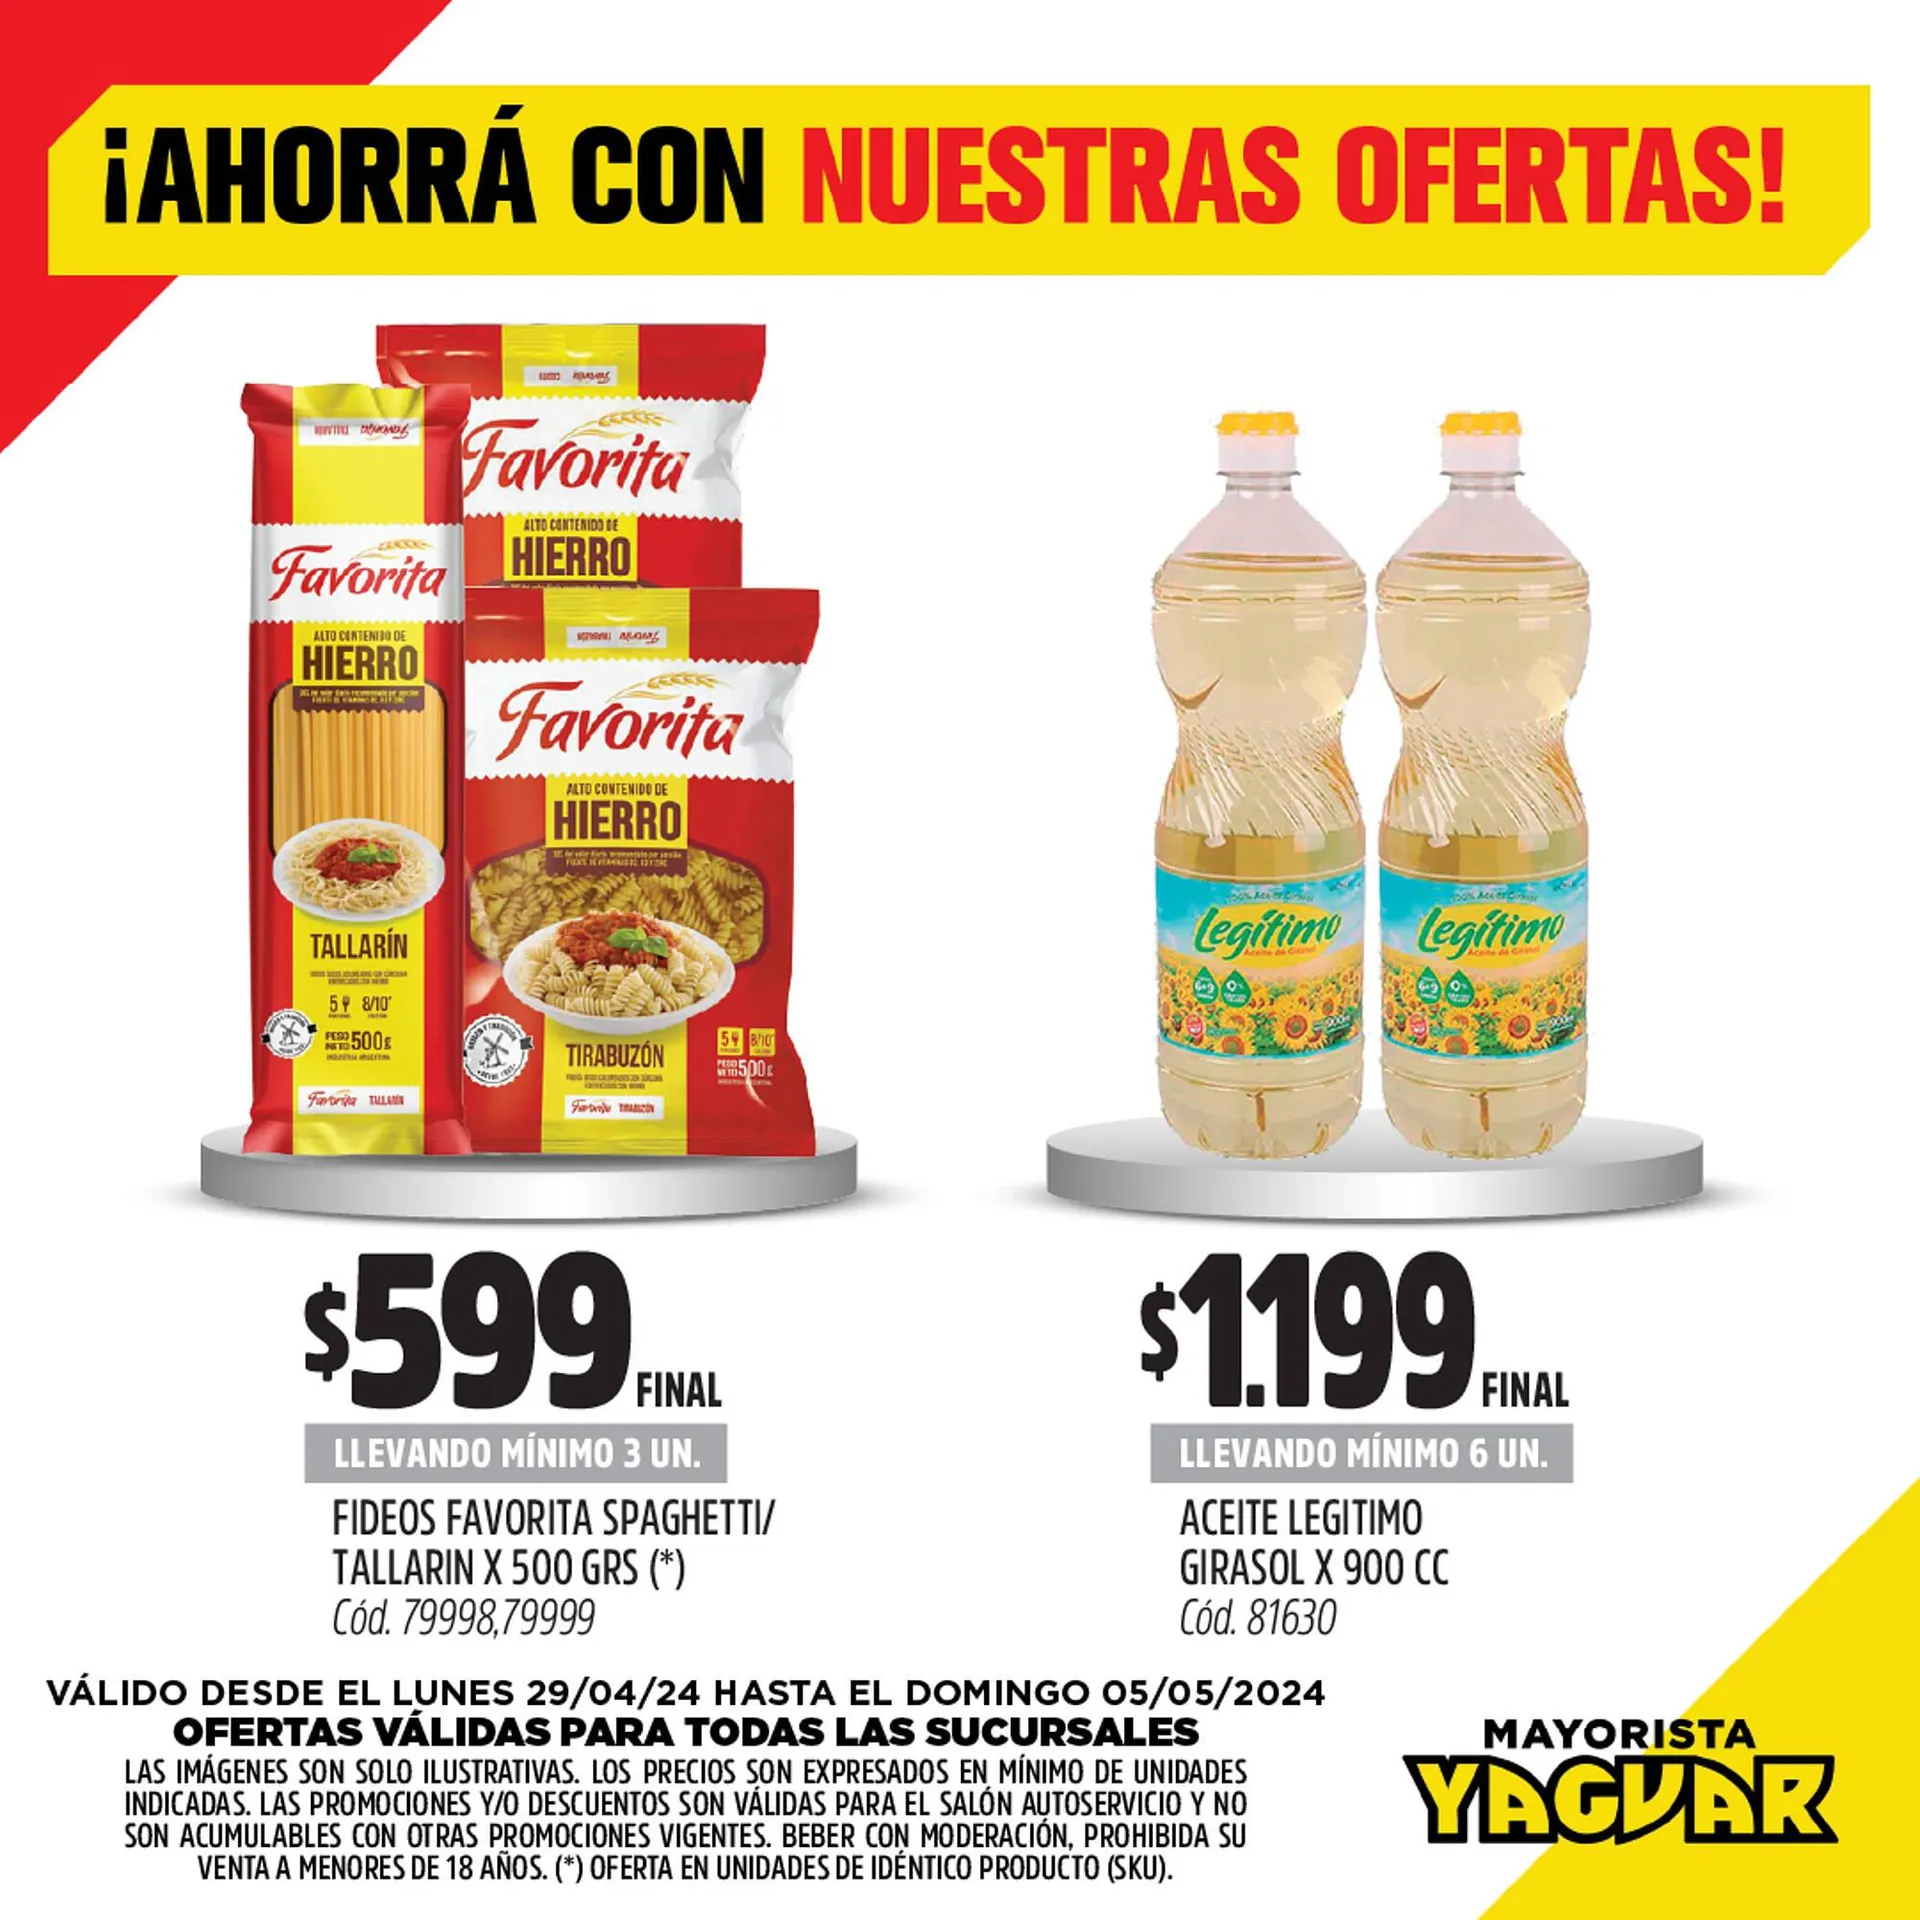 Catálogo Supermercados Yaguar - 1